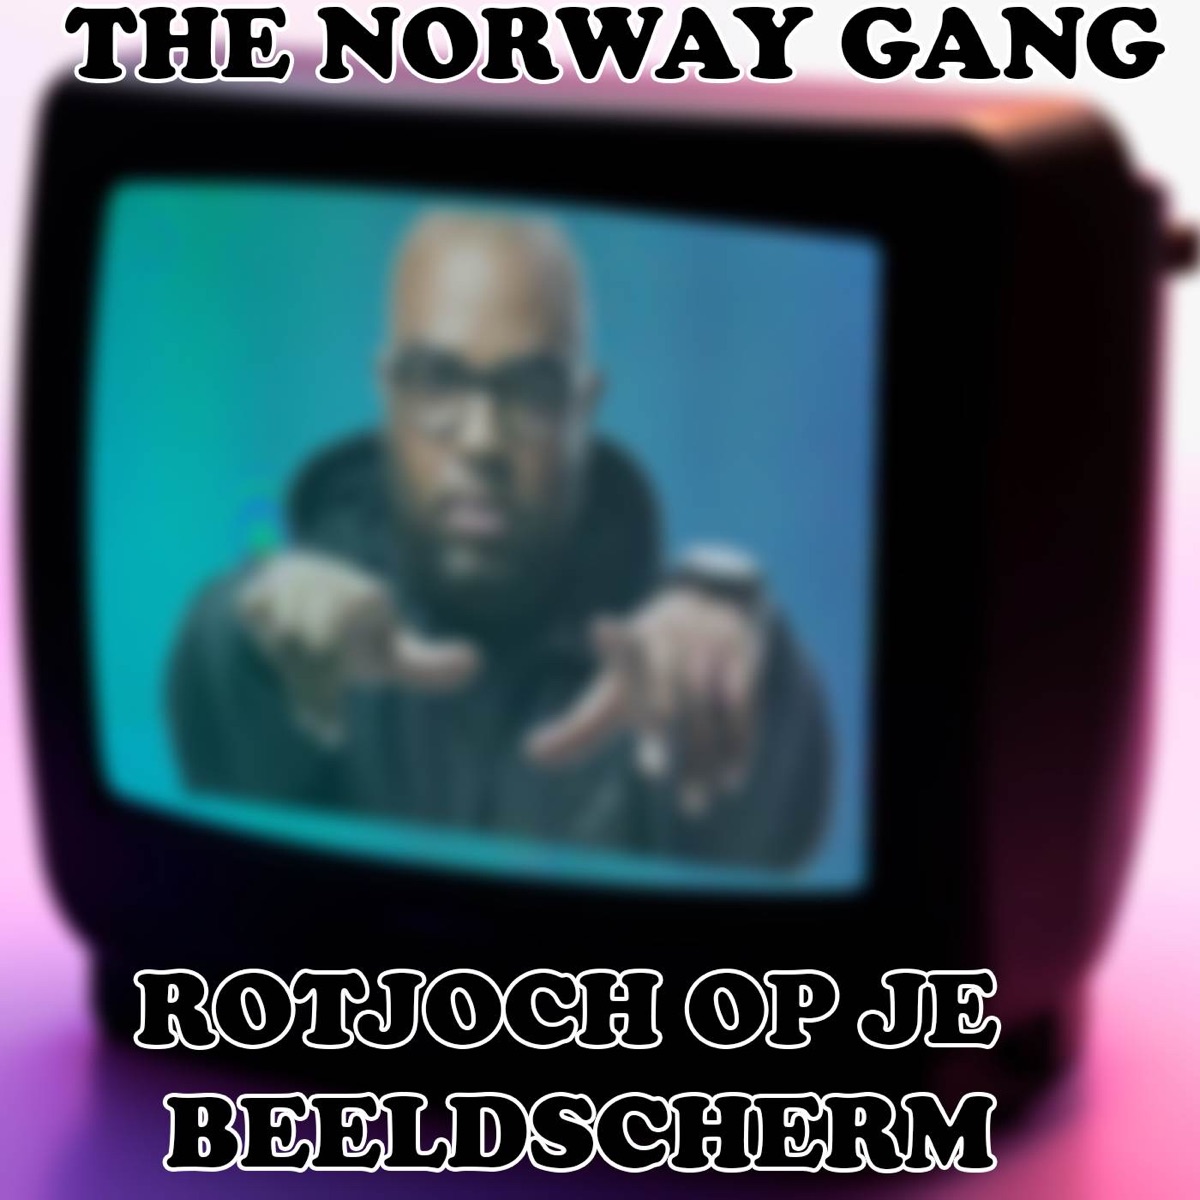 Dit Is Een Liedje En Dat Gaat Je Irriteren (Irritant Liedje Hardstyle Mix)  - Single - Album By The Norway Gang - Apple Music